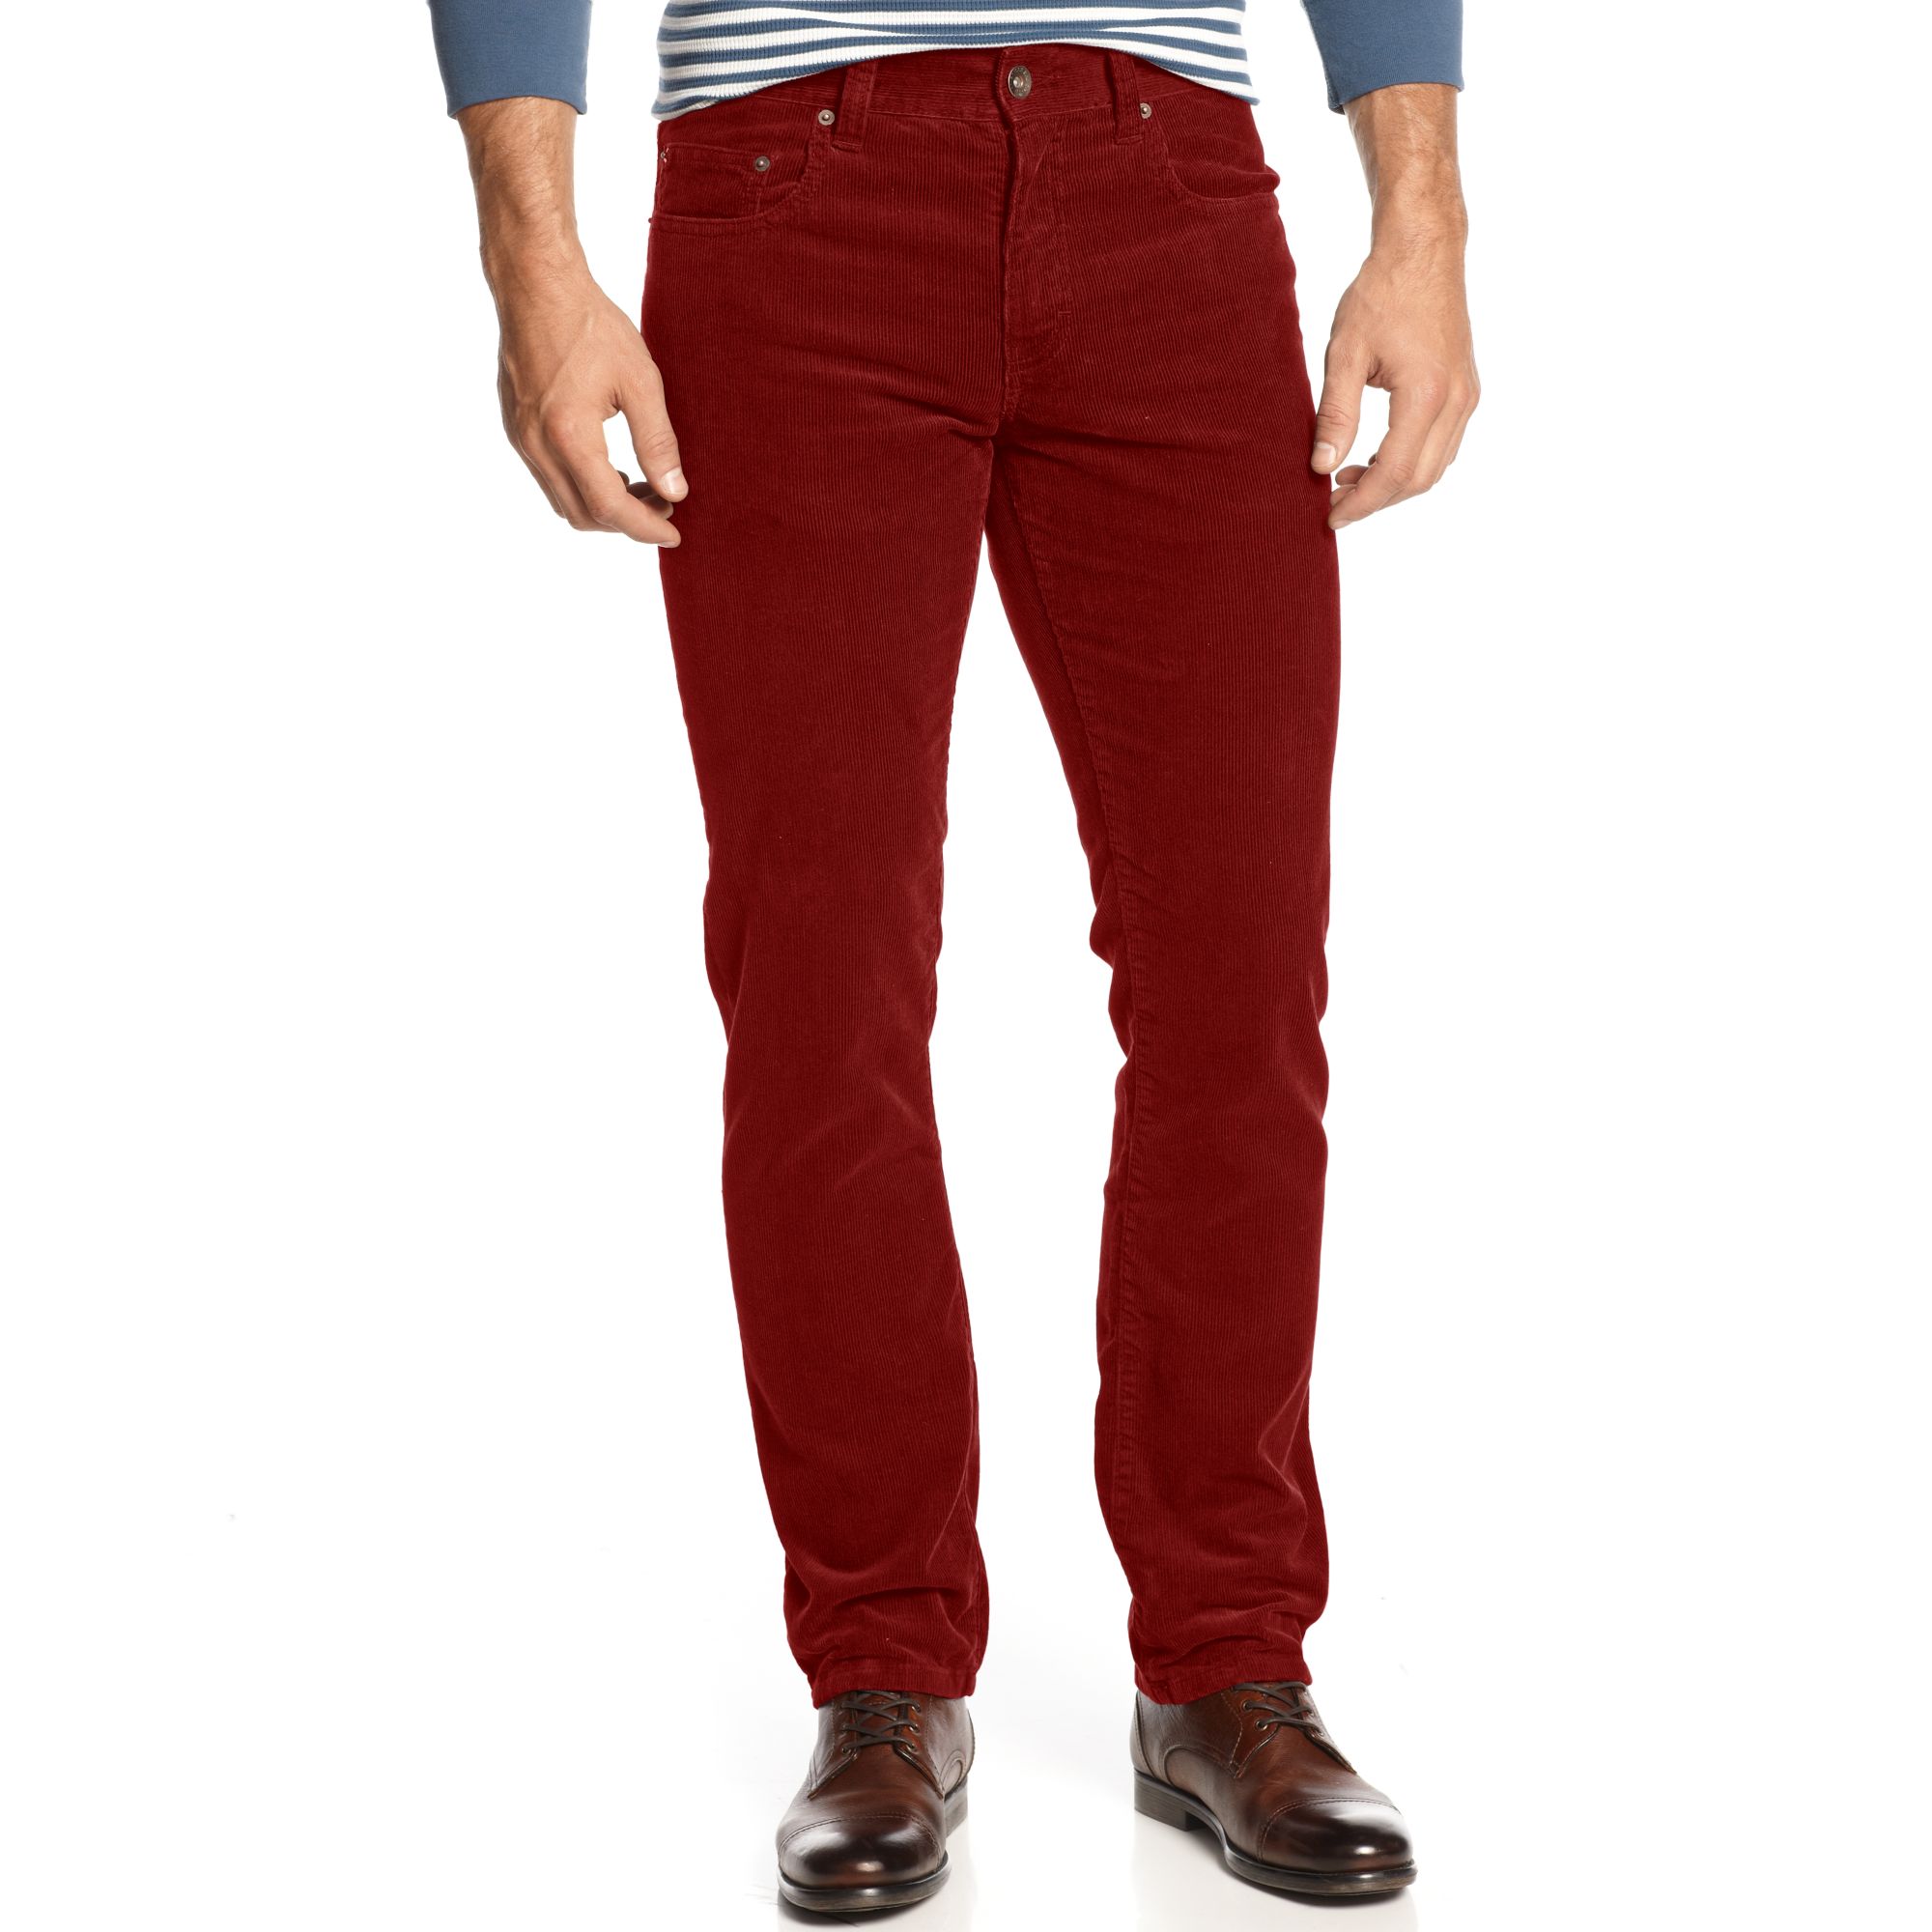 American Rag Corduroy Pants in Red for Men - Lyst